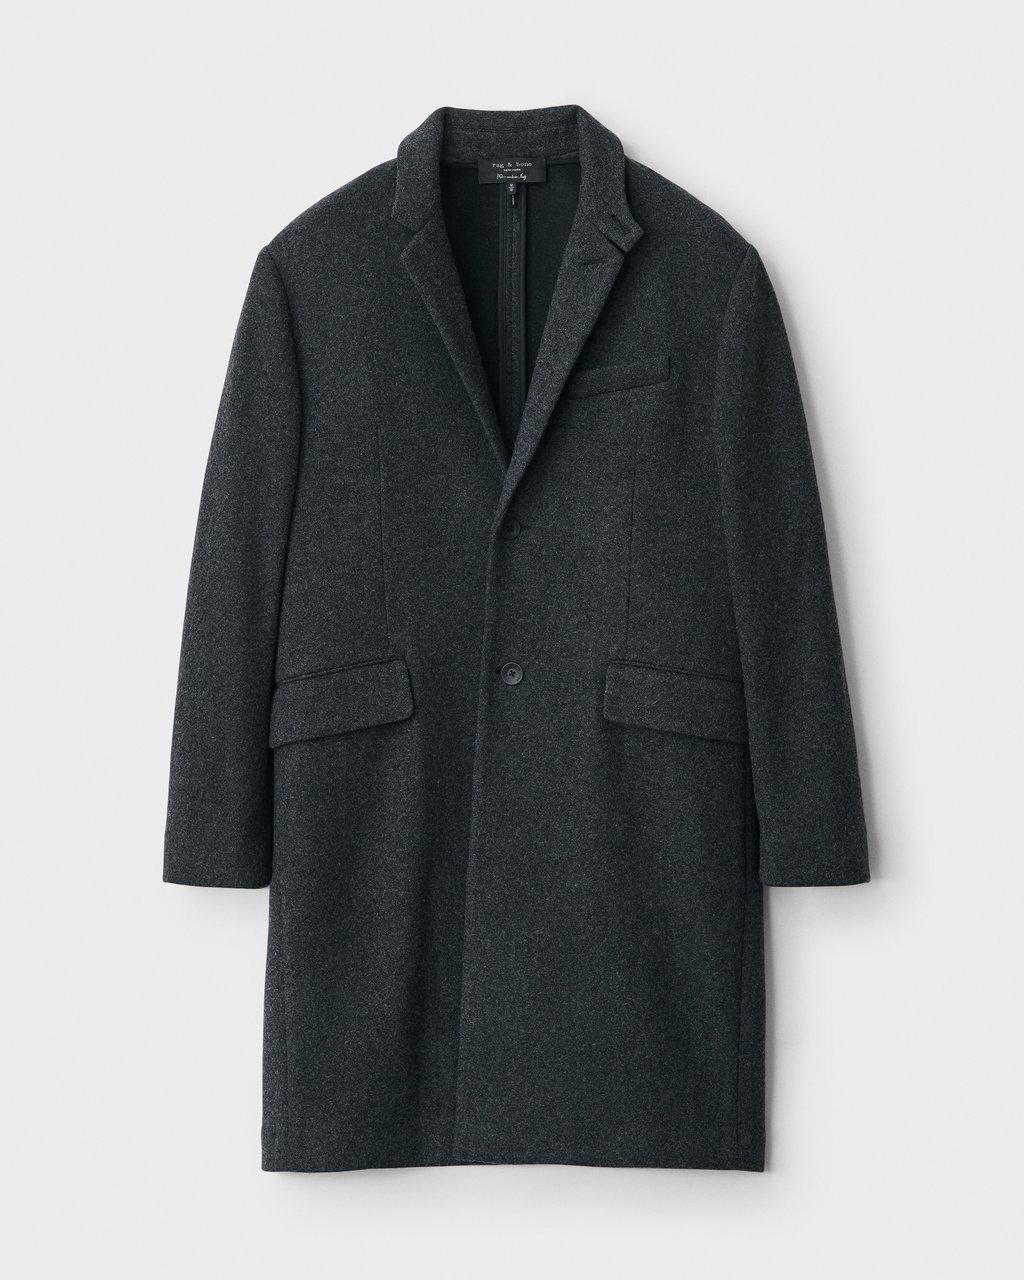 Sloane Coat